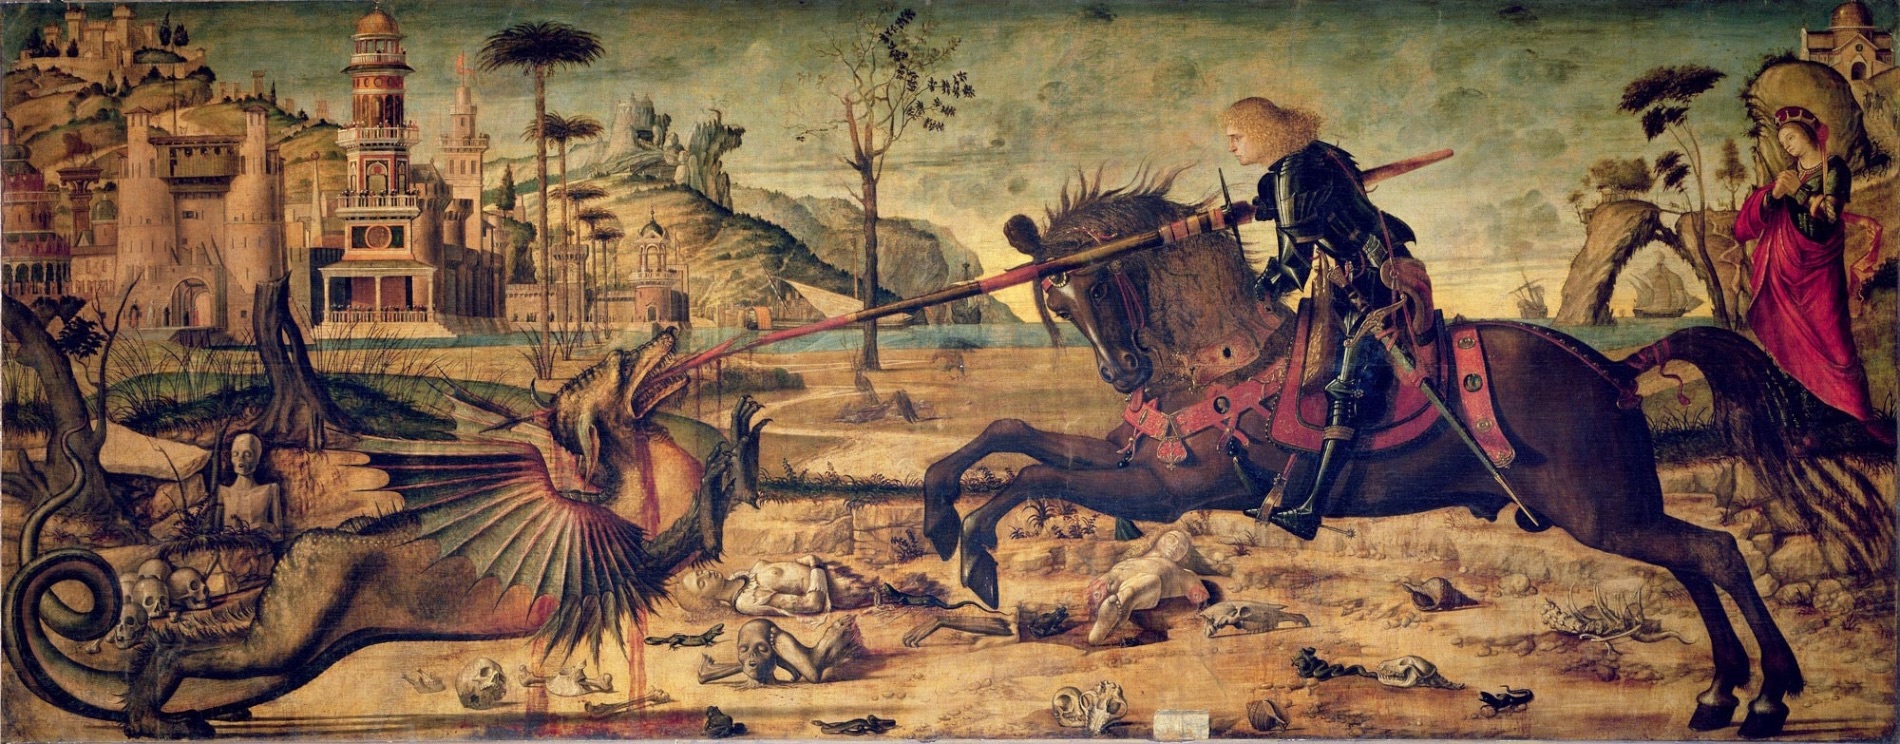 Vittore Carpaccio: St. George and the Dragon, 1502.